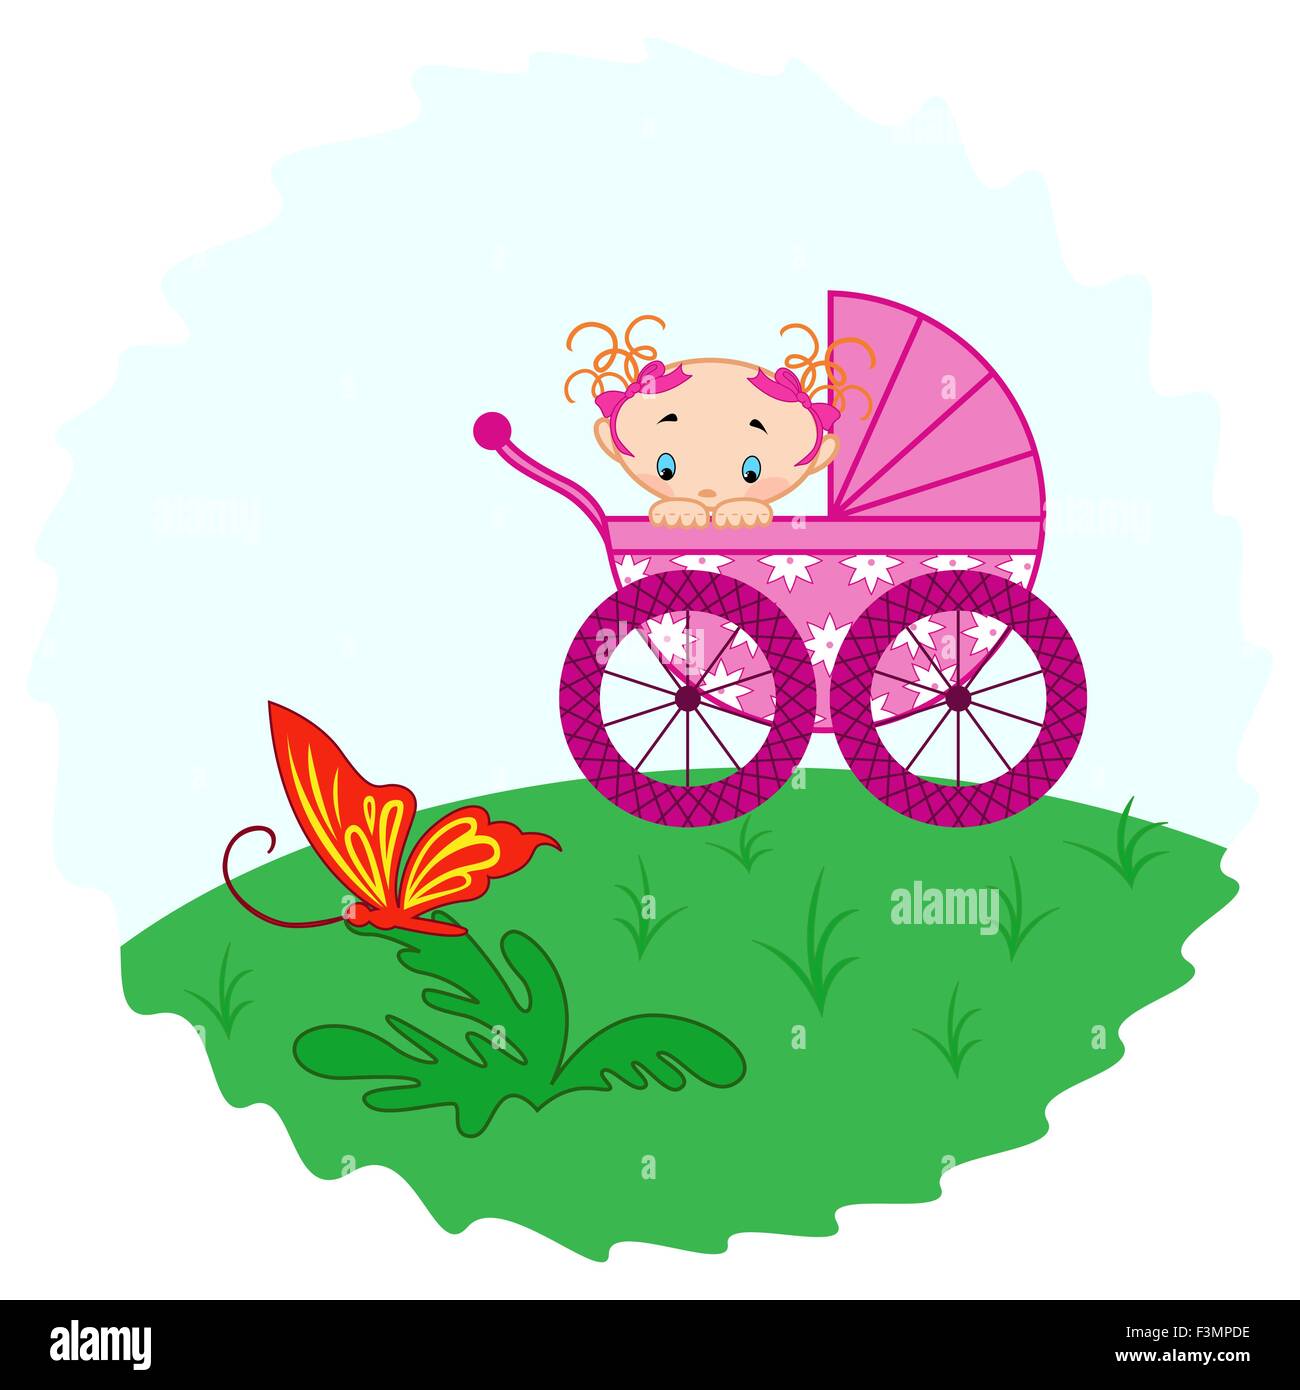 Babymädchen aus Kinderwagen gerade einen Schmetterling, Handzeichnung Vektor-illustration Stock Vektor